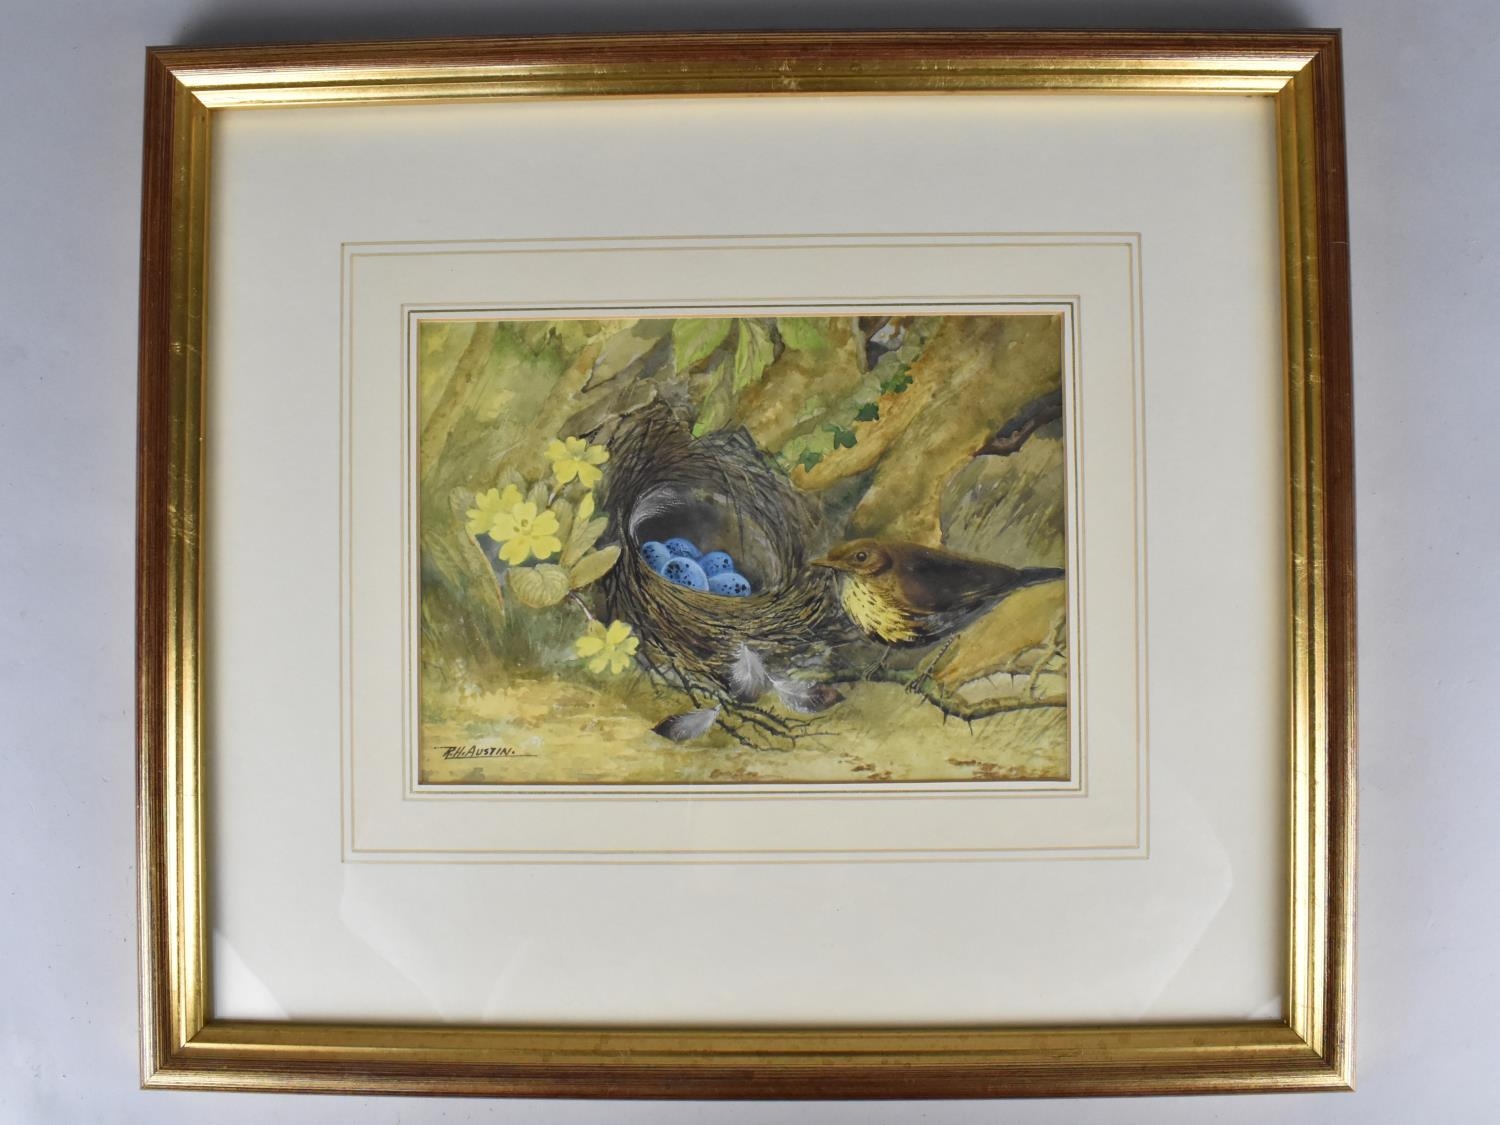 R H Austin, Watercolour, Still Life Study of Thrush Beside Nest with Eggs, Subject 22x16cm, Framed